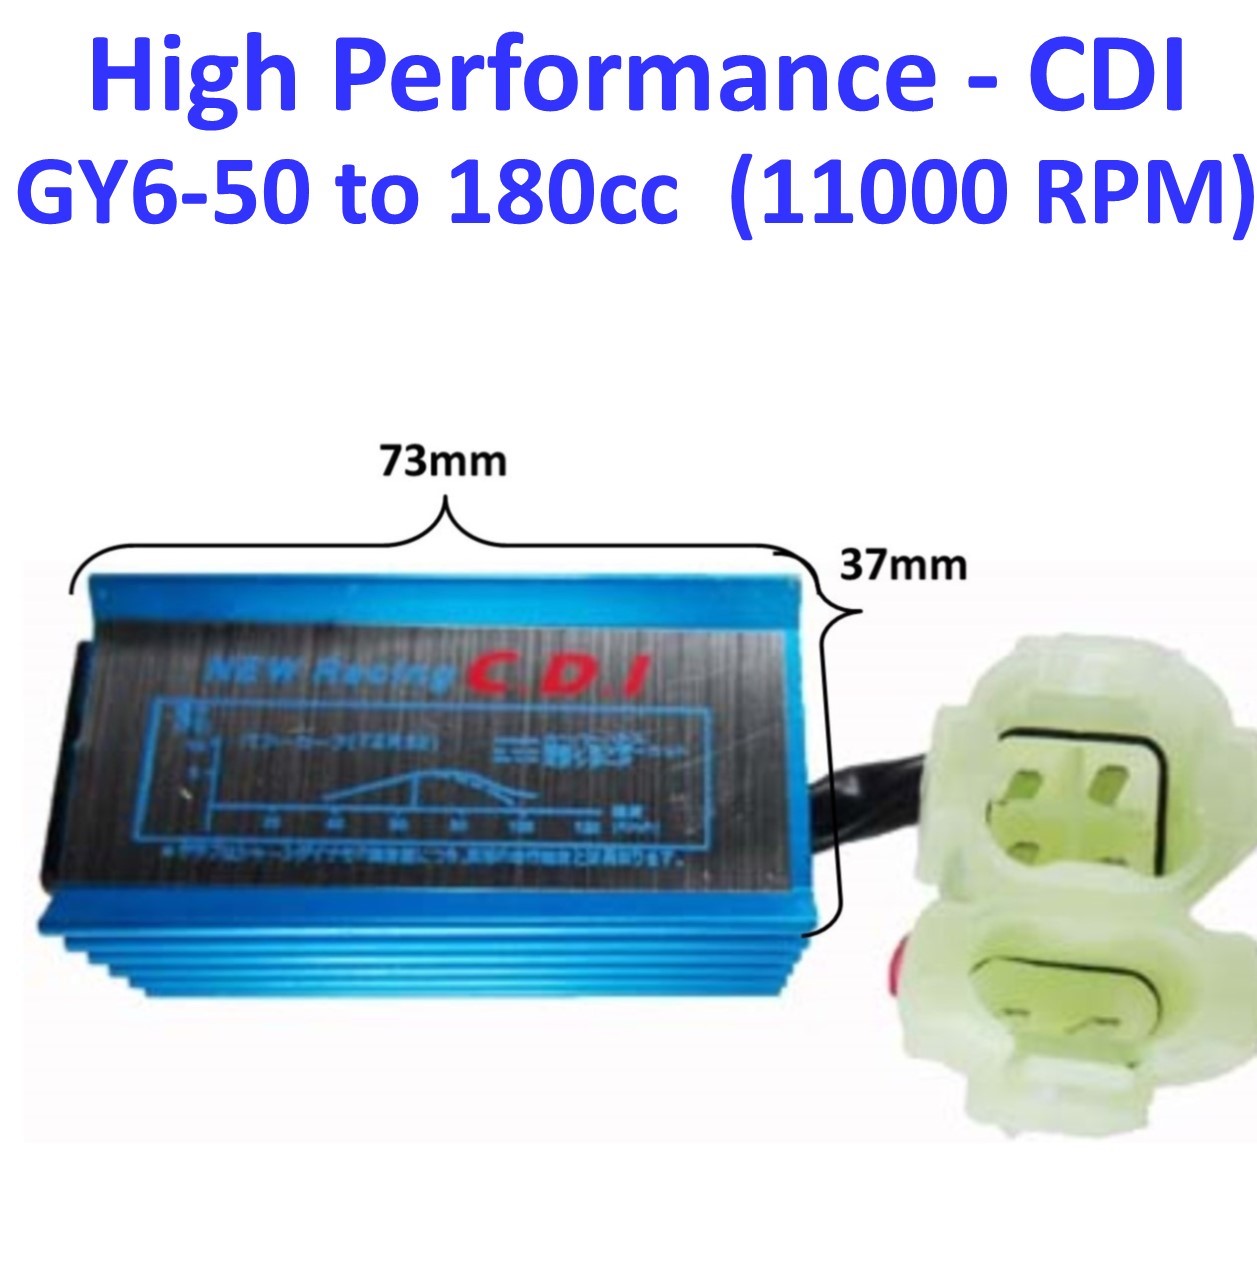 High Performance CDI Box (AC) GY6-50cc 11000 RPM 28deg Angle 2 plug, 6 pin 73mm x 37mm